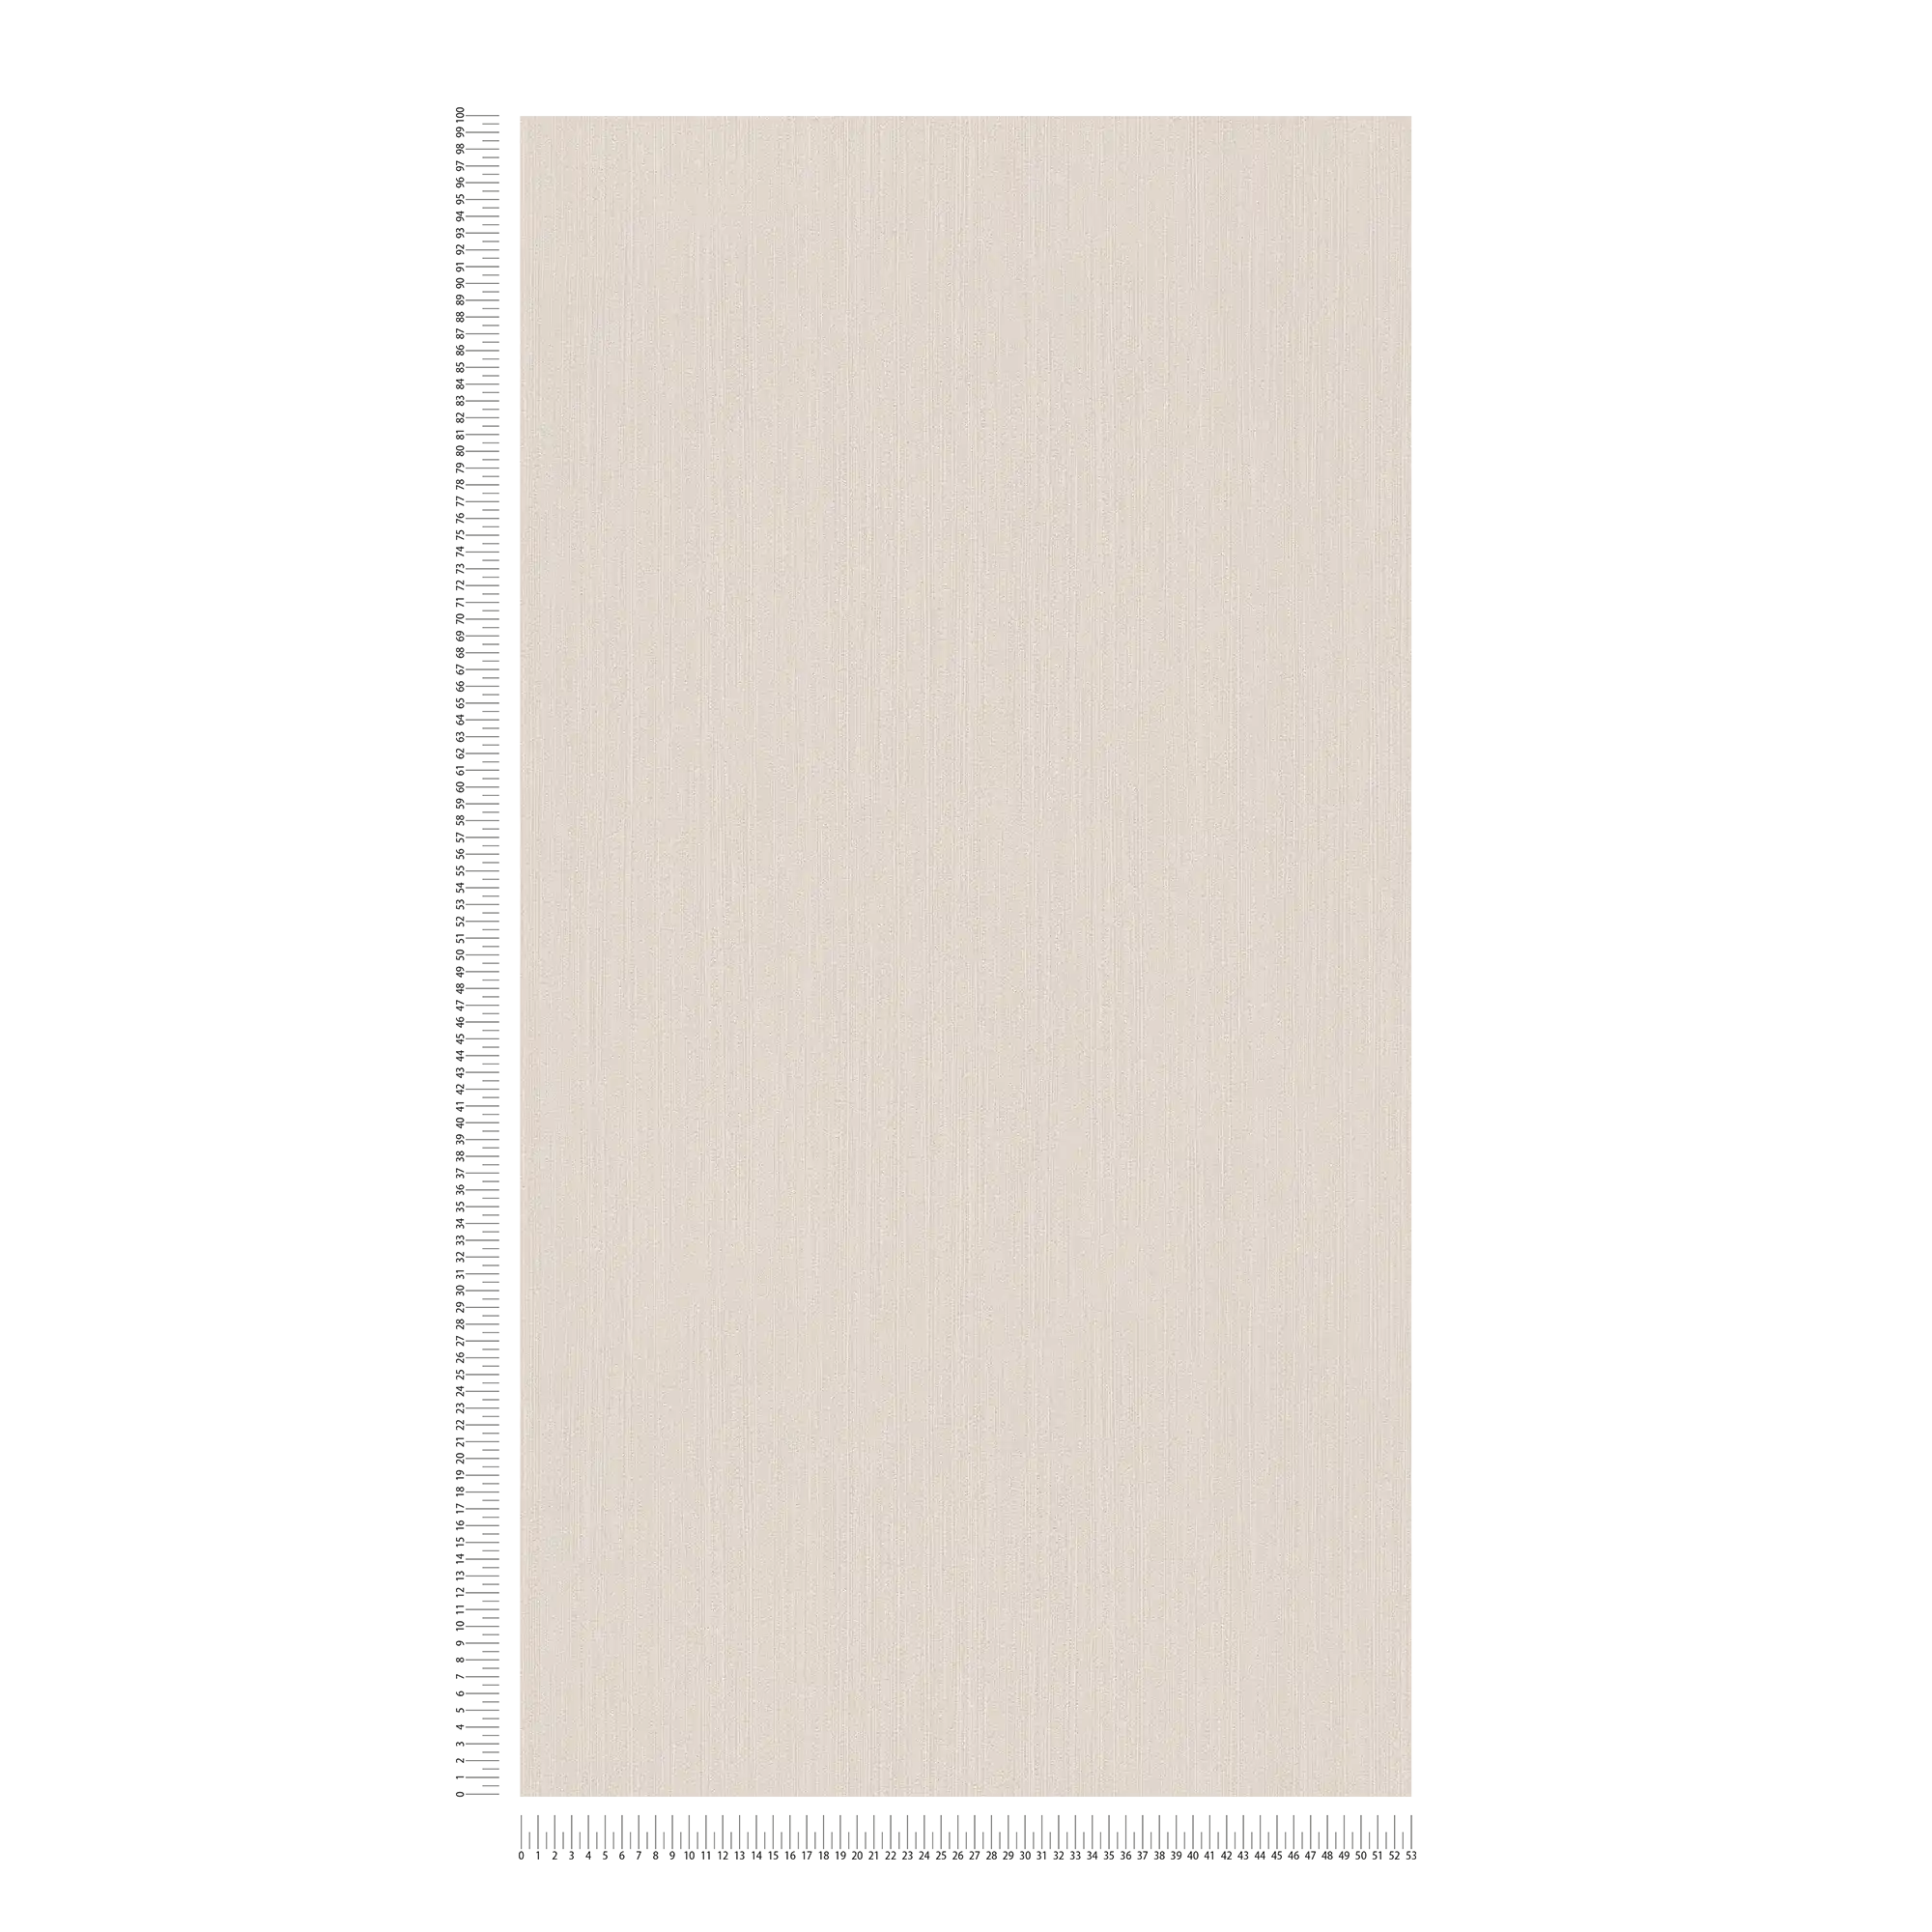             Carta da parati in tessuto non tessuto beige crema con tratteggio sottile - beige
        